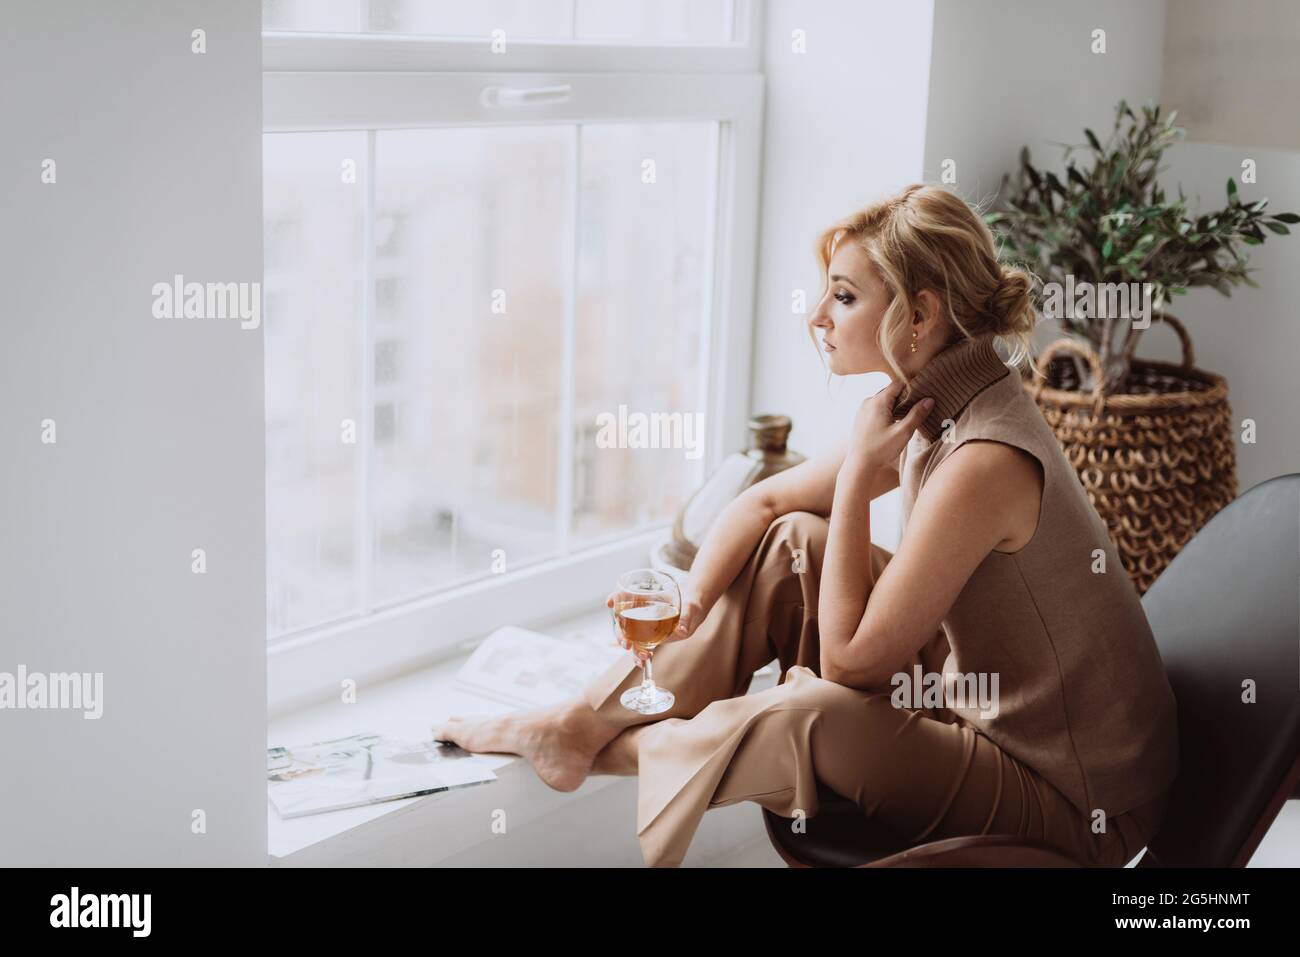 Junge Geschäftsfrau arbeitet zu Hause. Das nachdenkliche, ruhige Modell hält ein Glas Weißwein und blickt aus dem Fenster. Schöne Frau in einem modernen Interieur. Weich Stockfoto